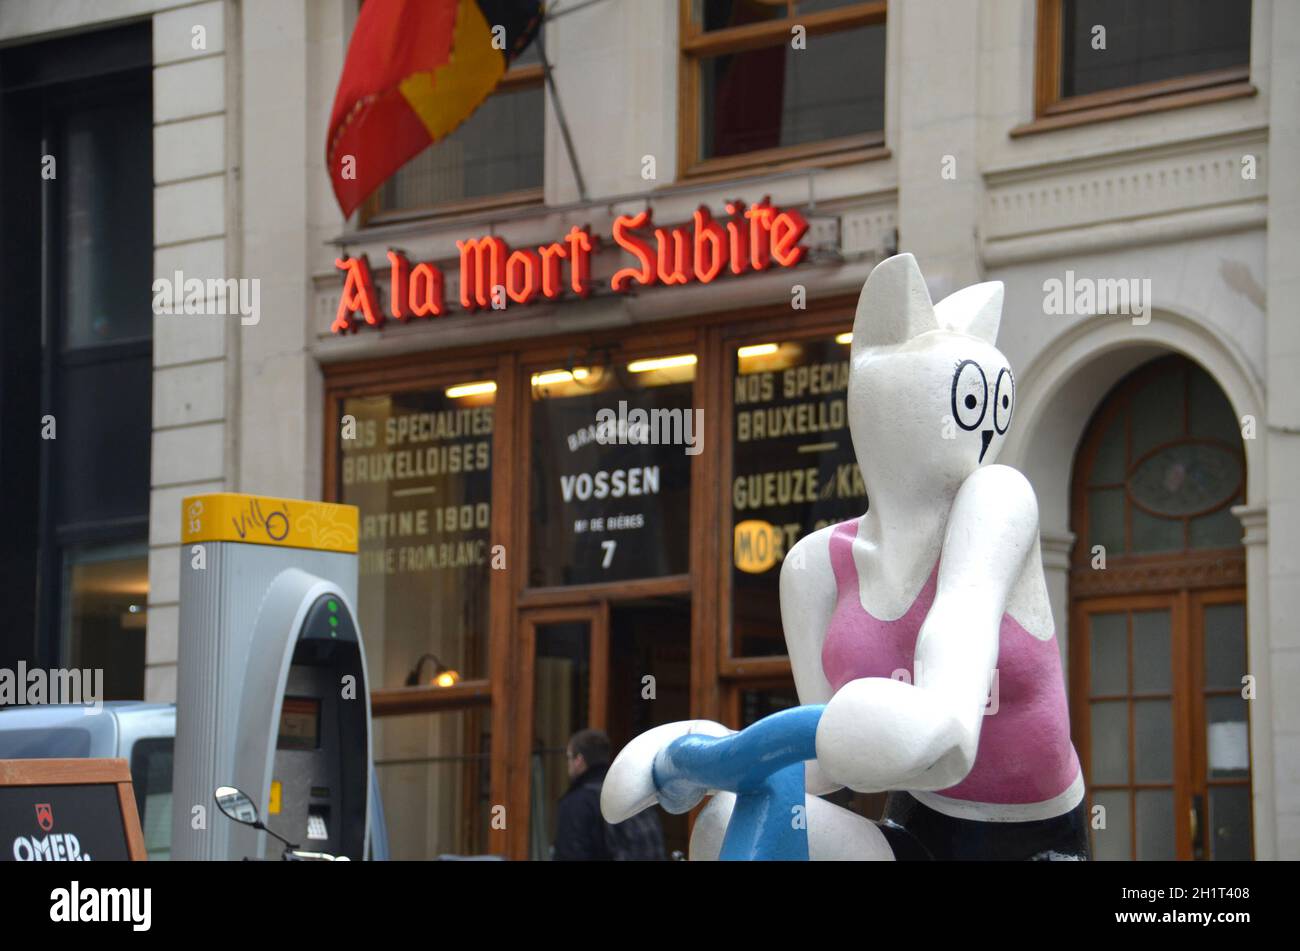 Das berühmte Lokal 'A la mort subite' im Zentrum von Brüssel Belgien - la famosa 'A la mort subite' en Bruselas, Bélgica Foto de stock